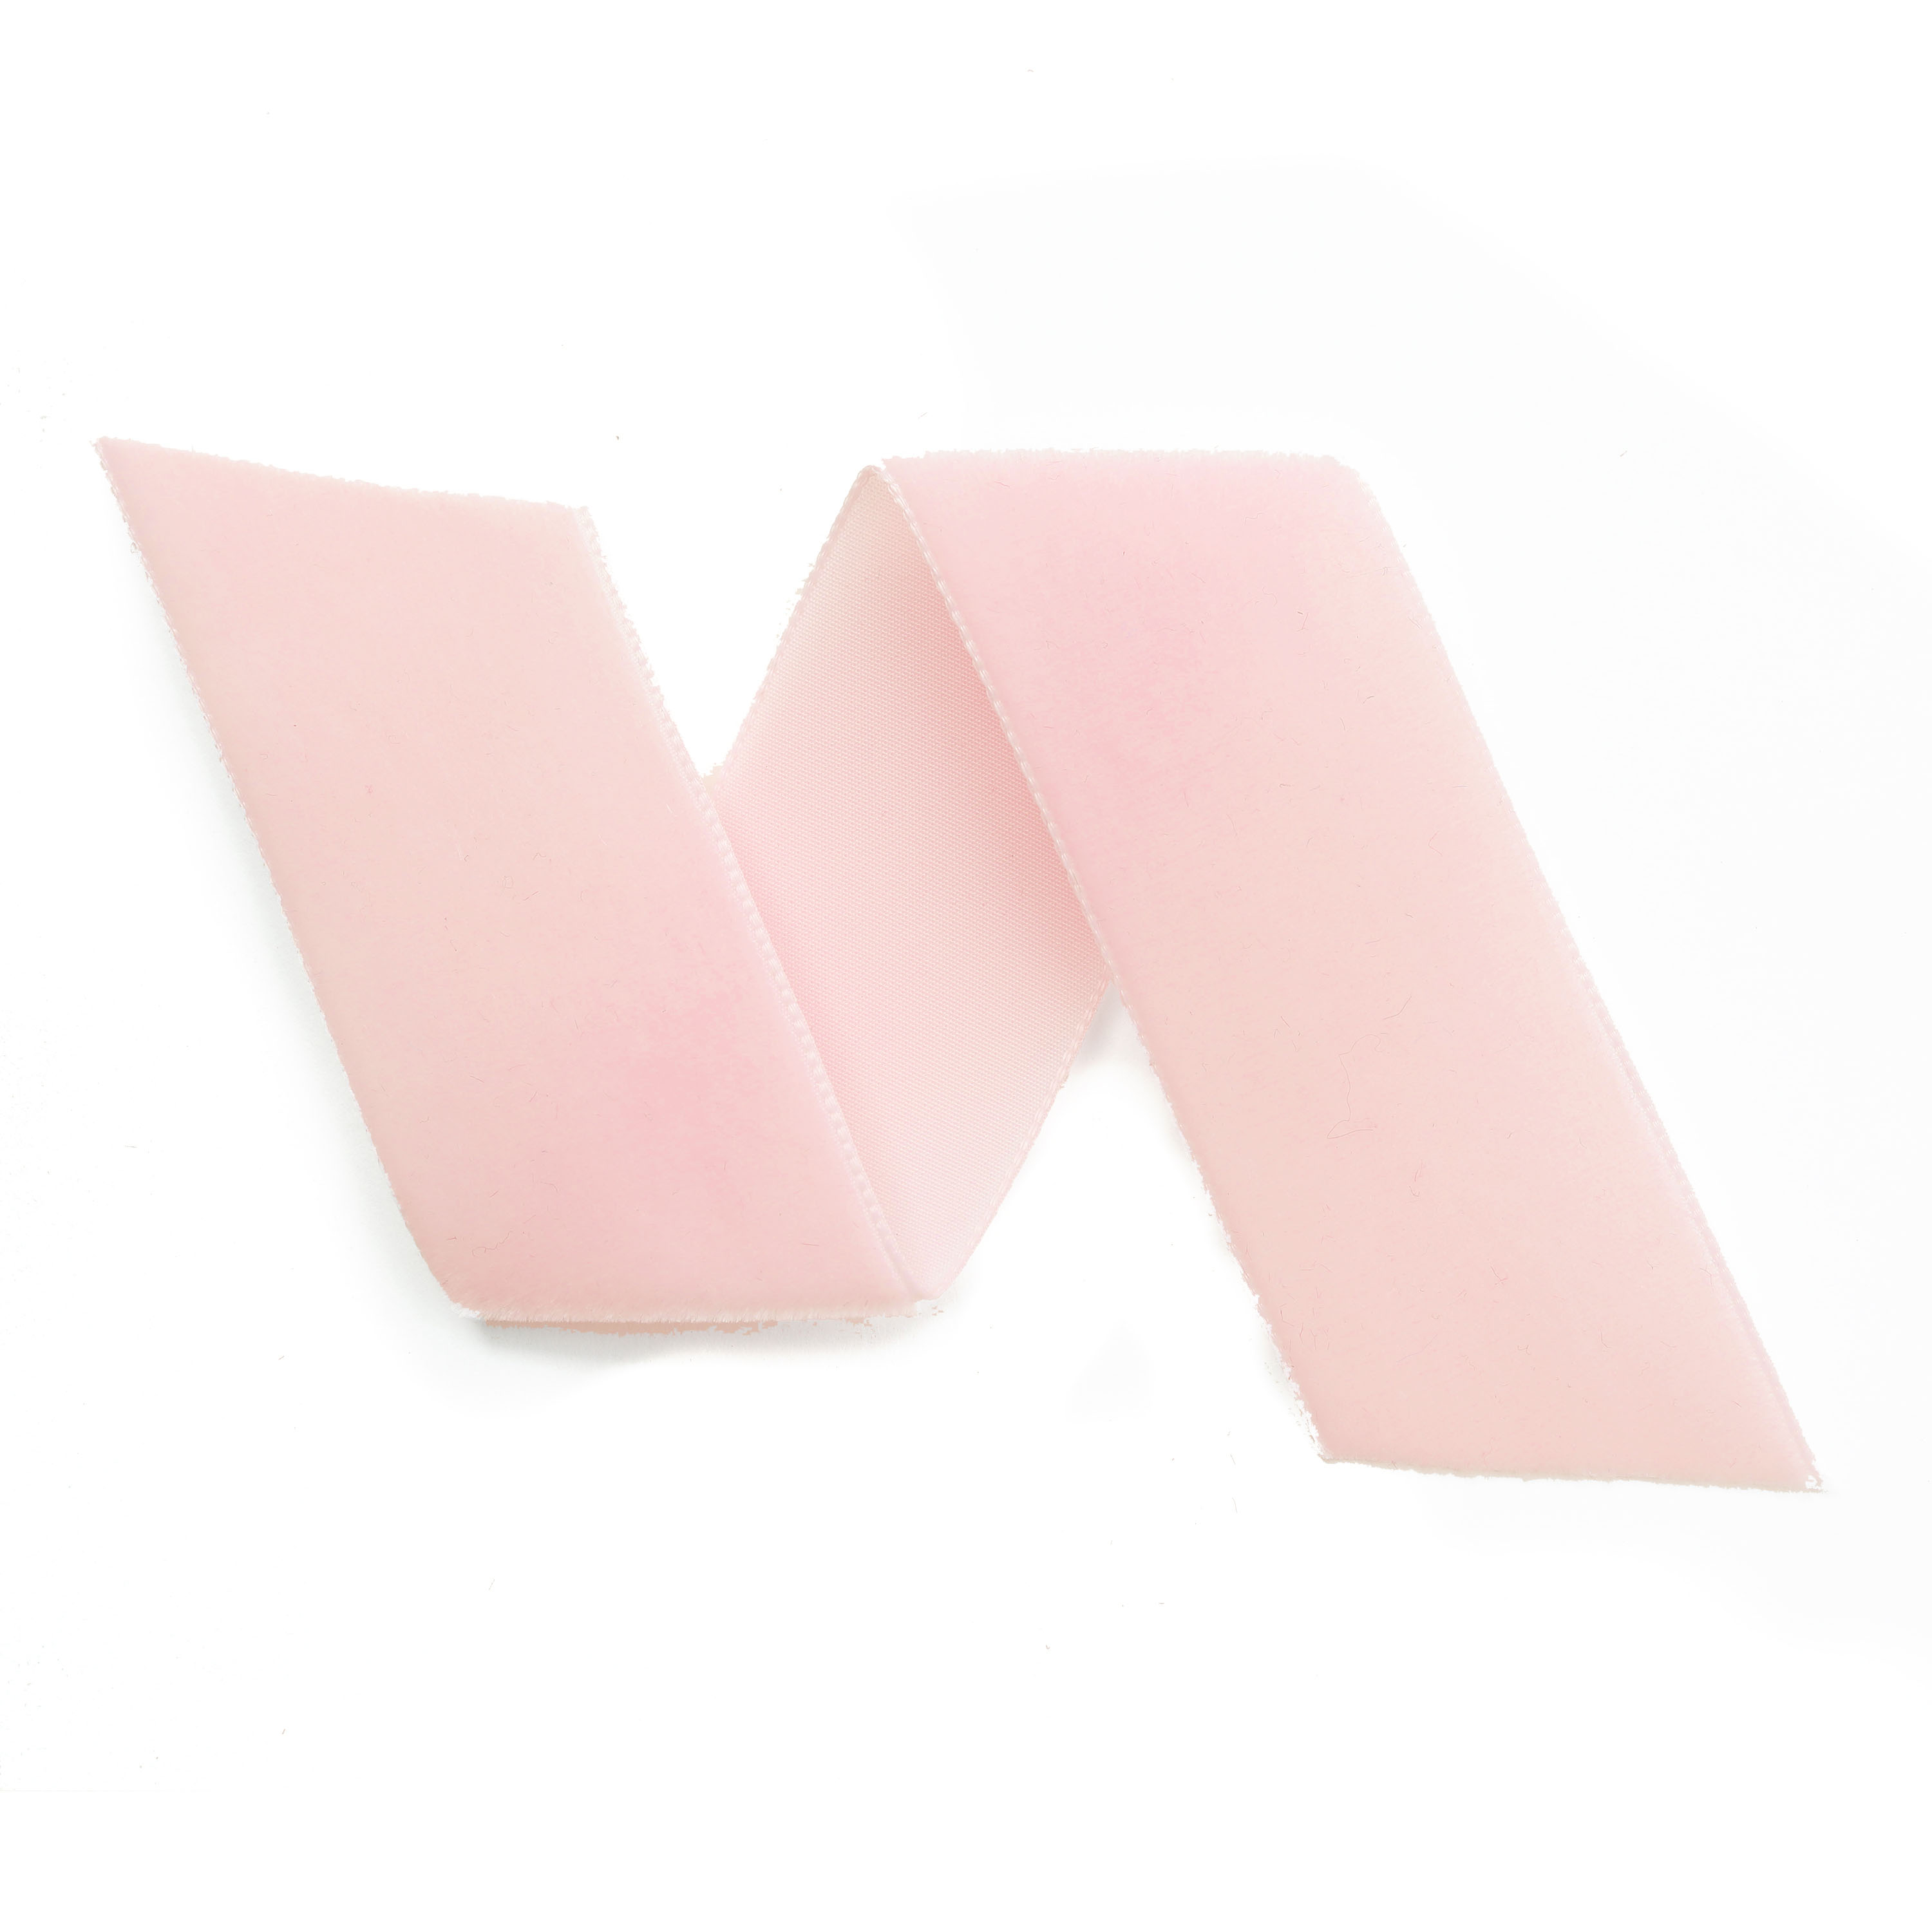 10 Yards Velvet Ribbon Spool (Pink, 5/8)